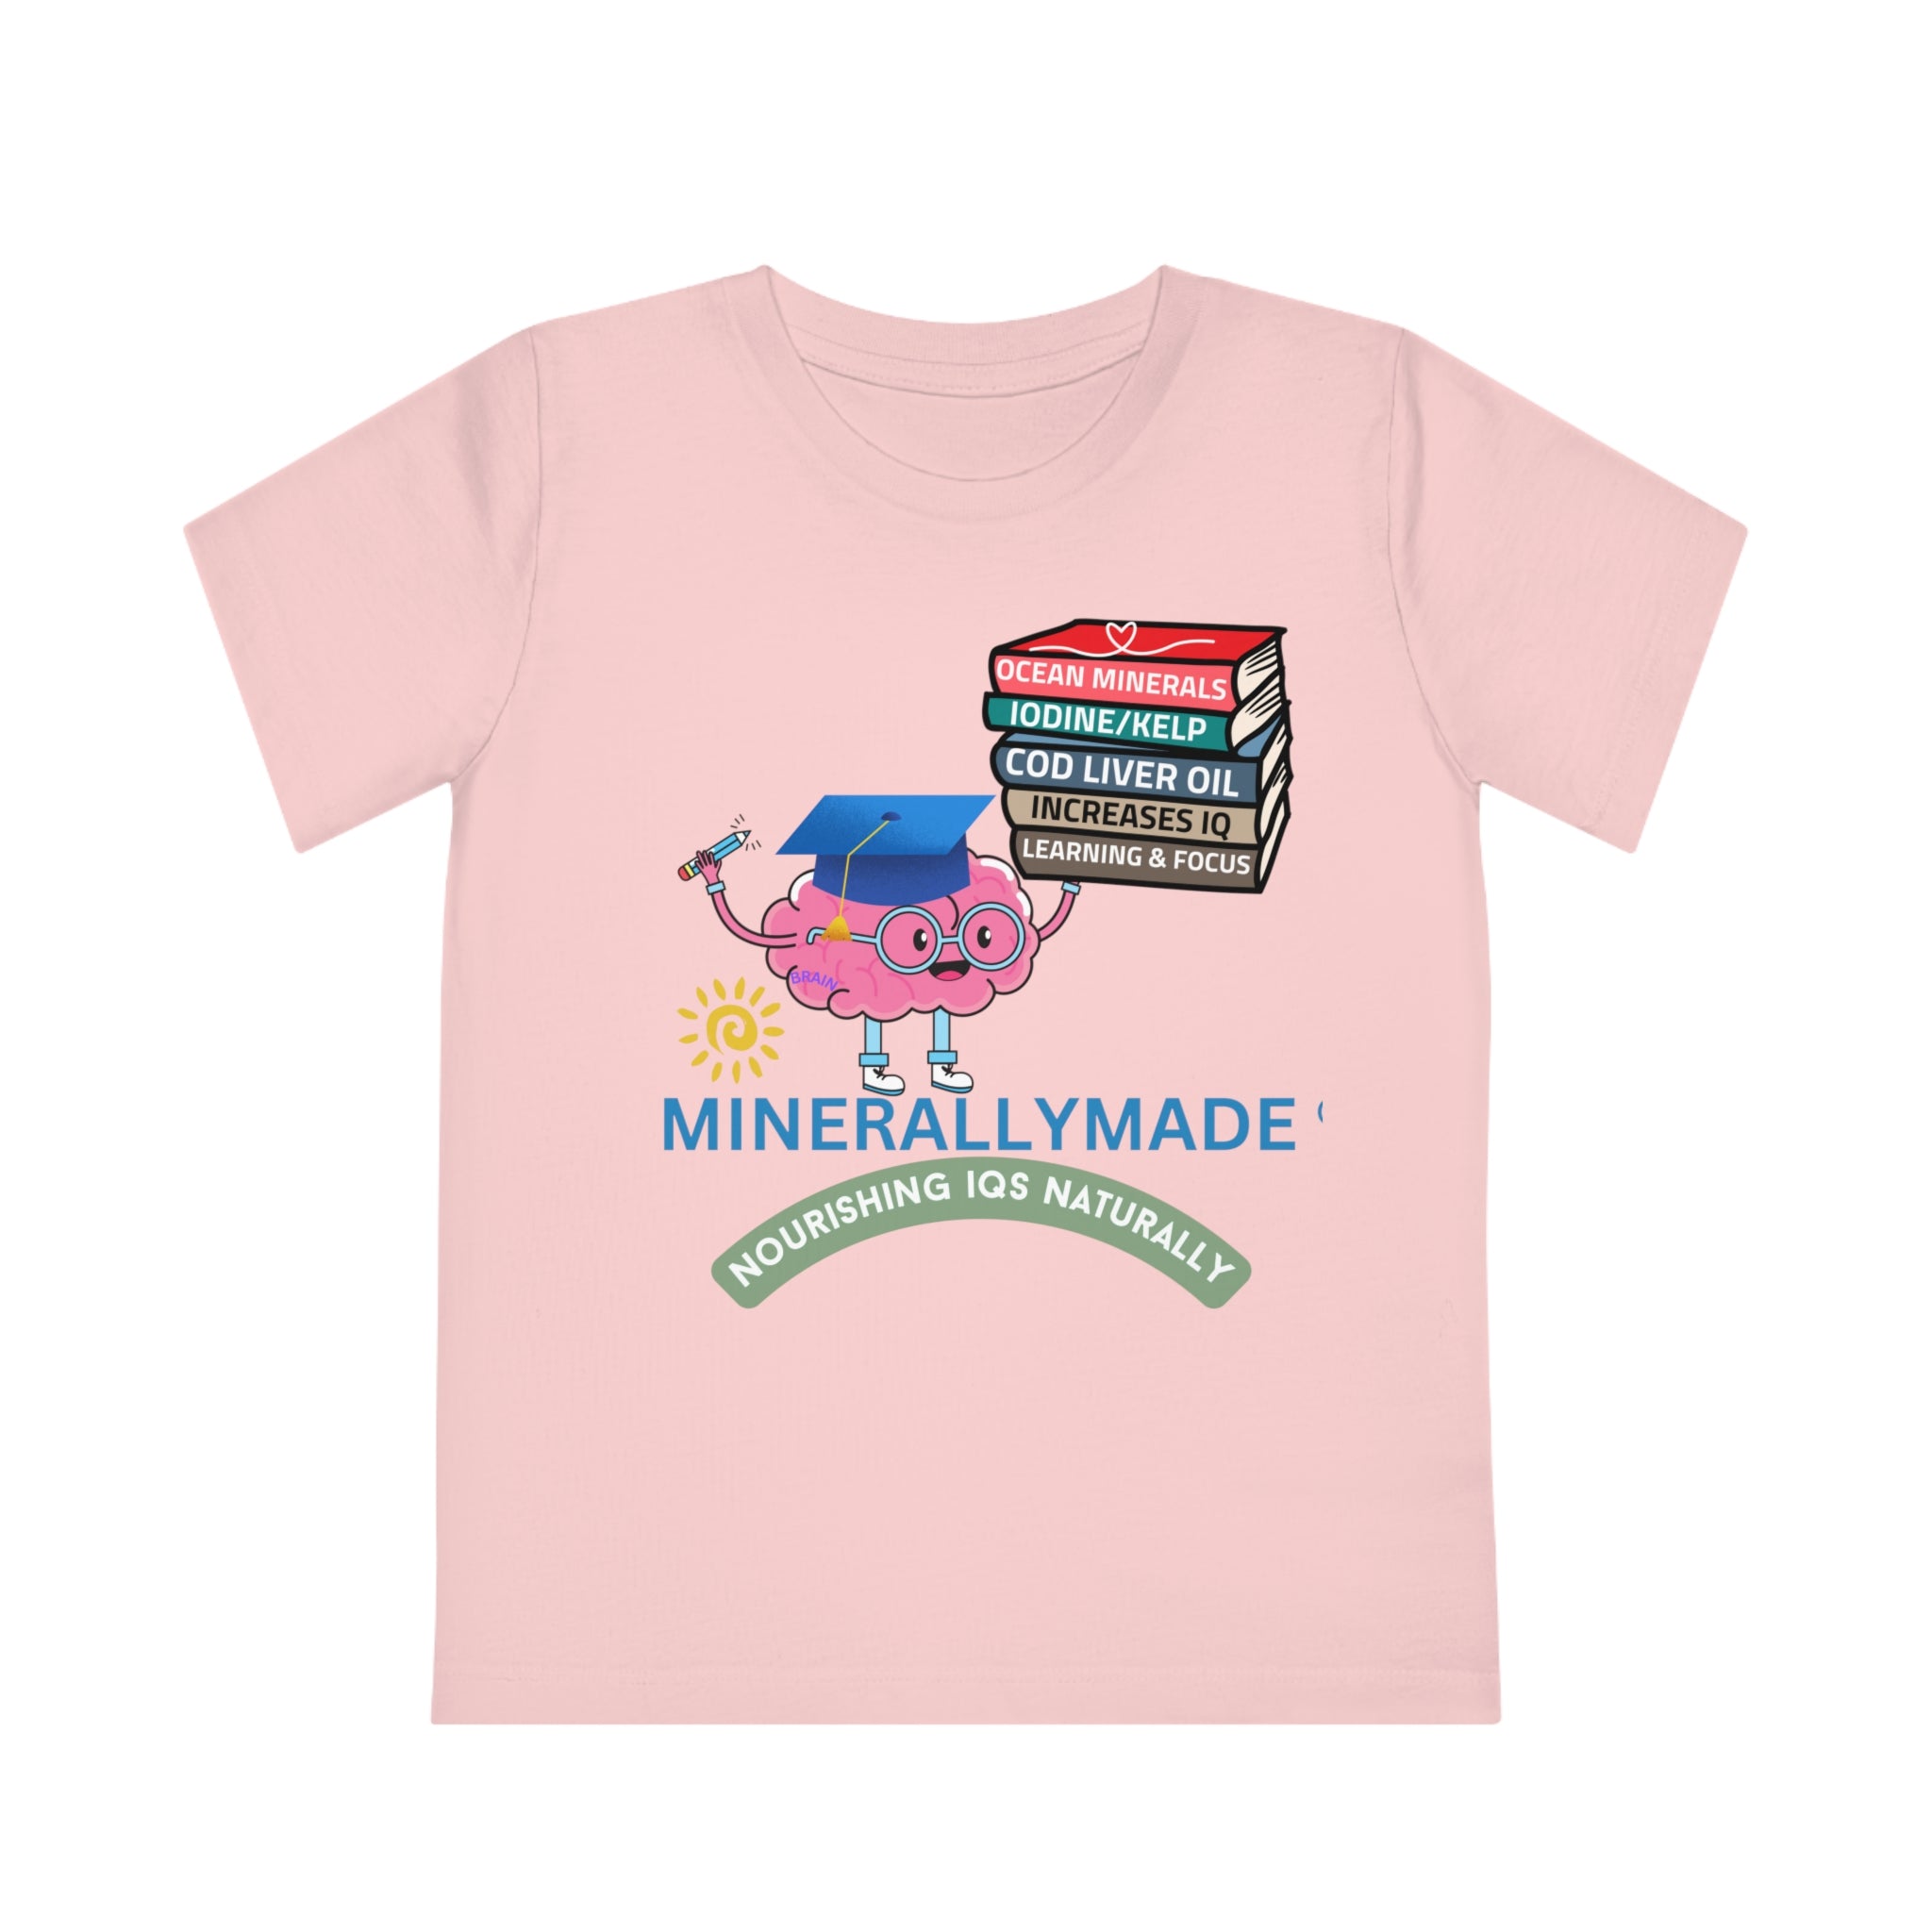 Minerallymade | Nourishing IQs Naturally | Kids' Creator T-Shirt